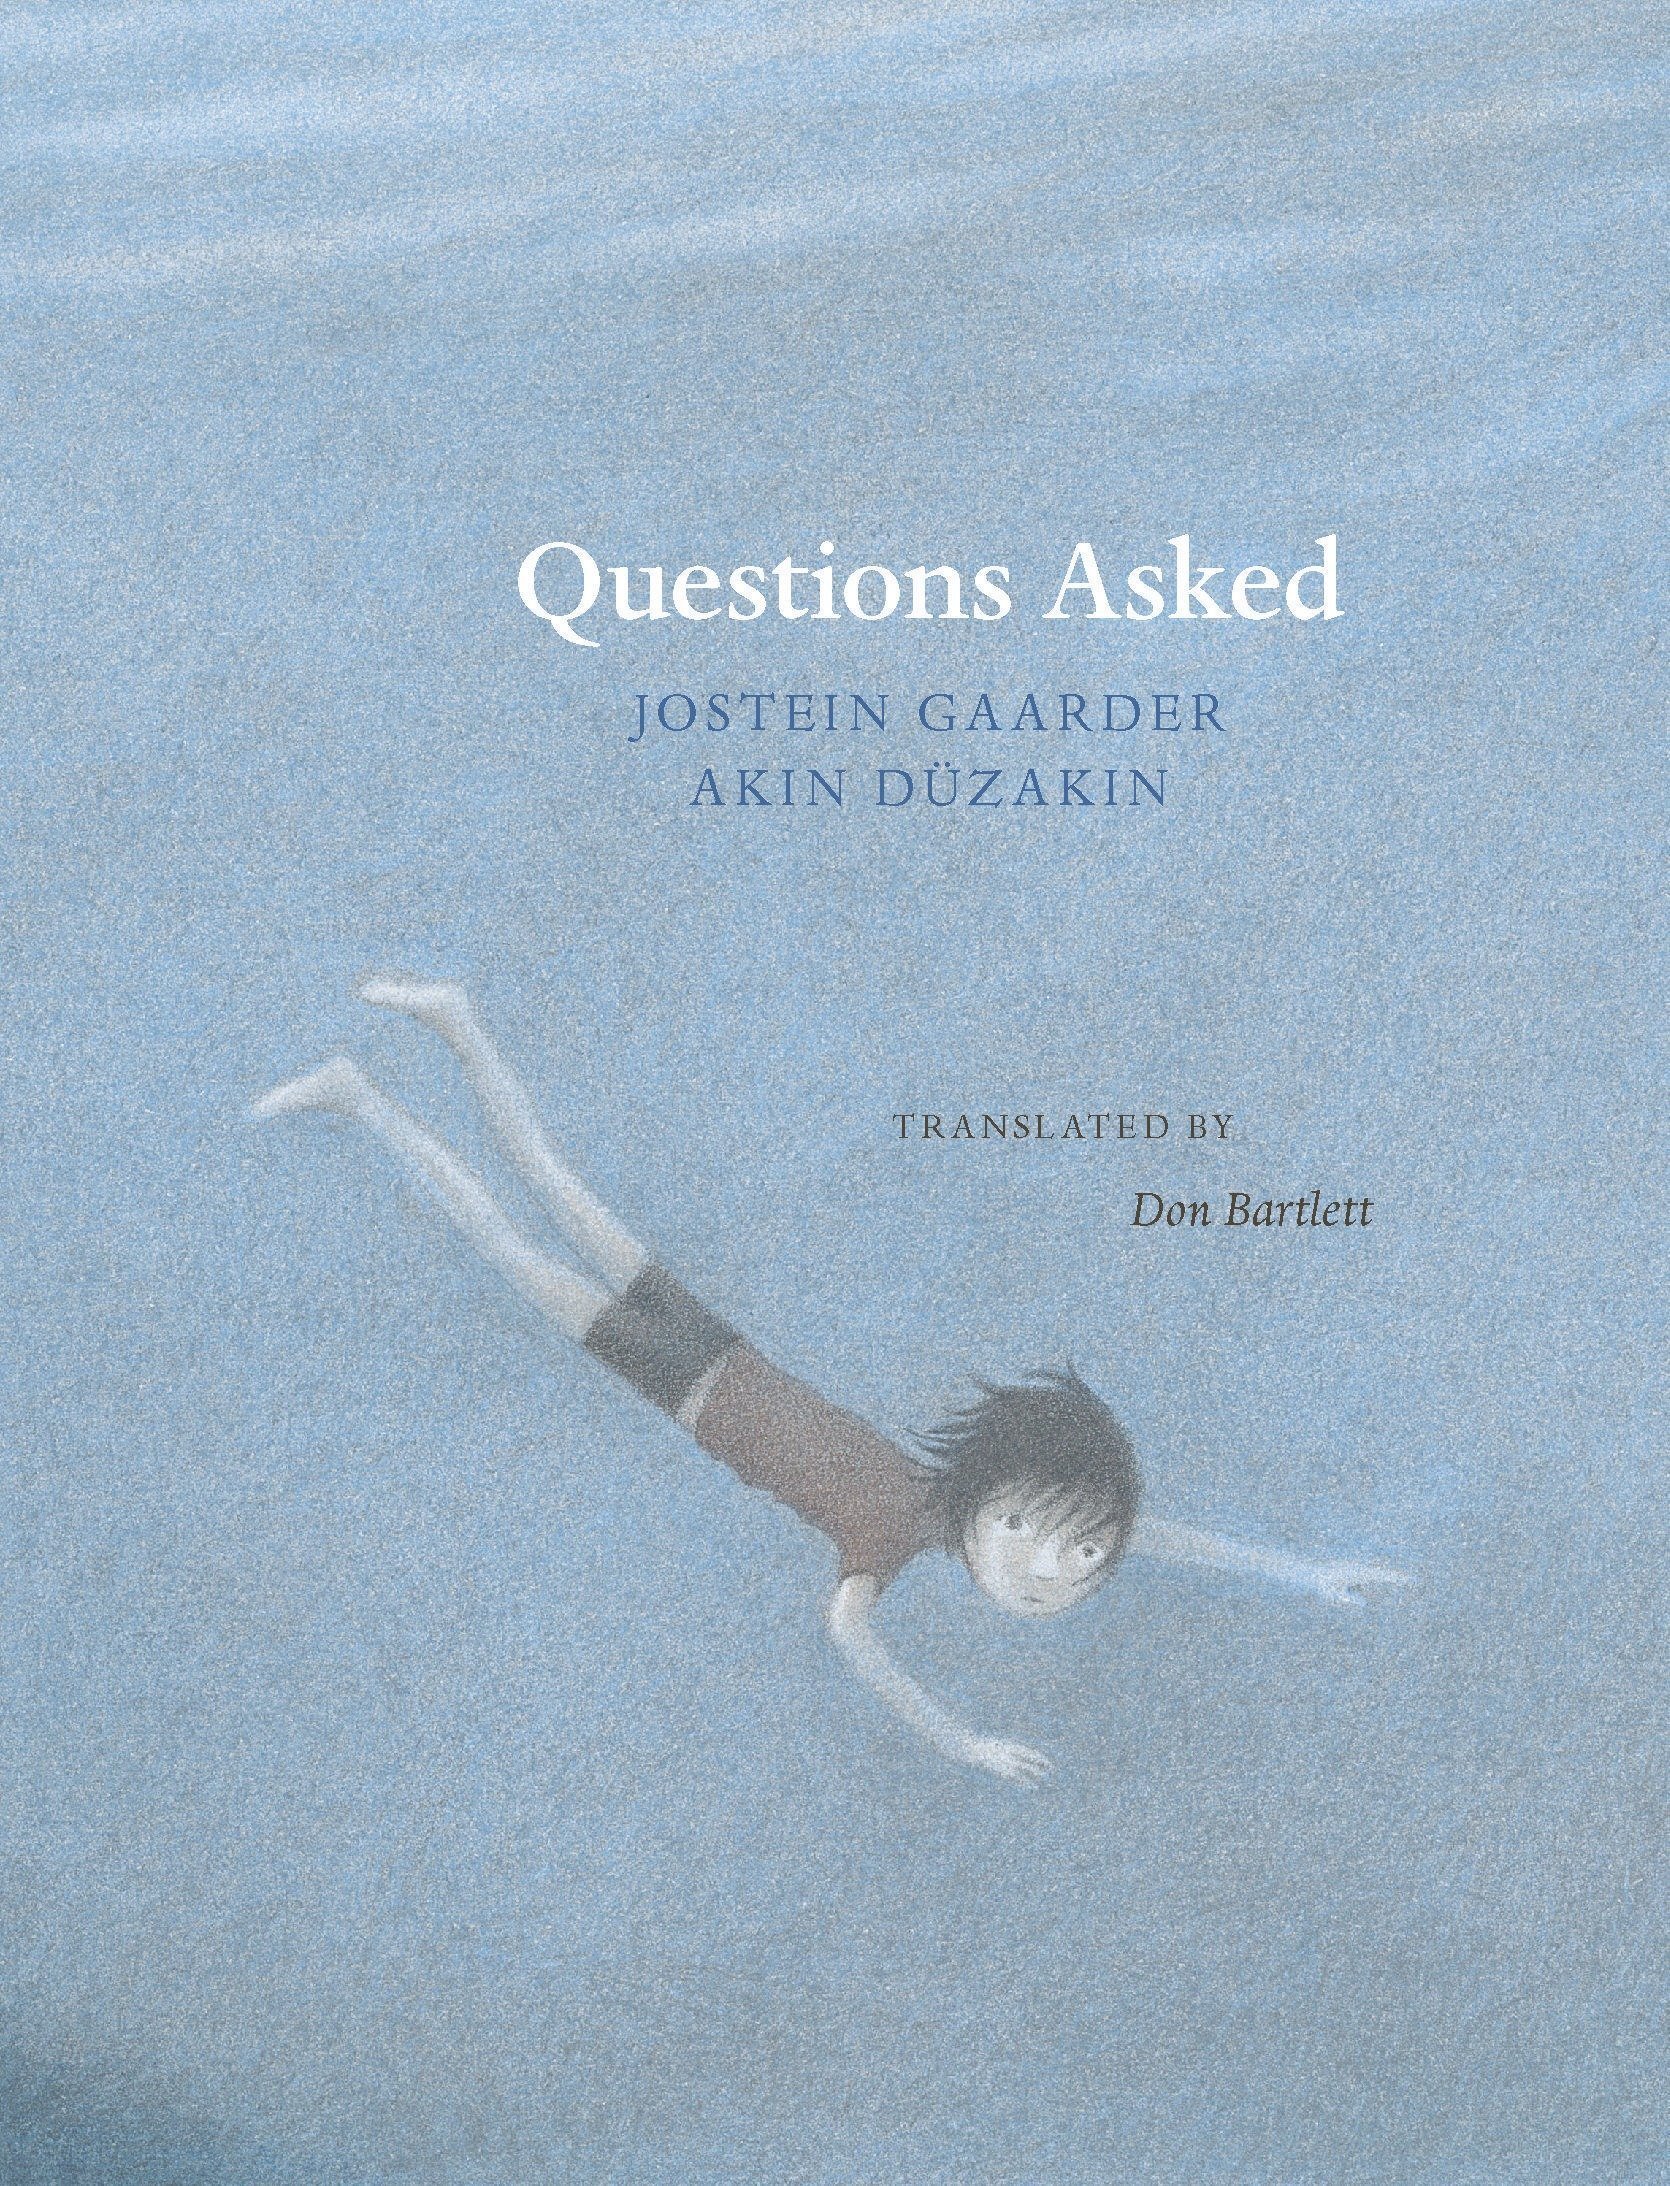 Questions Asked - Jostein Gaarder